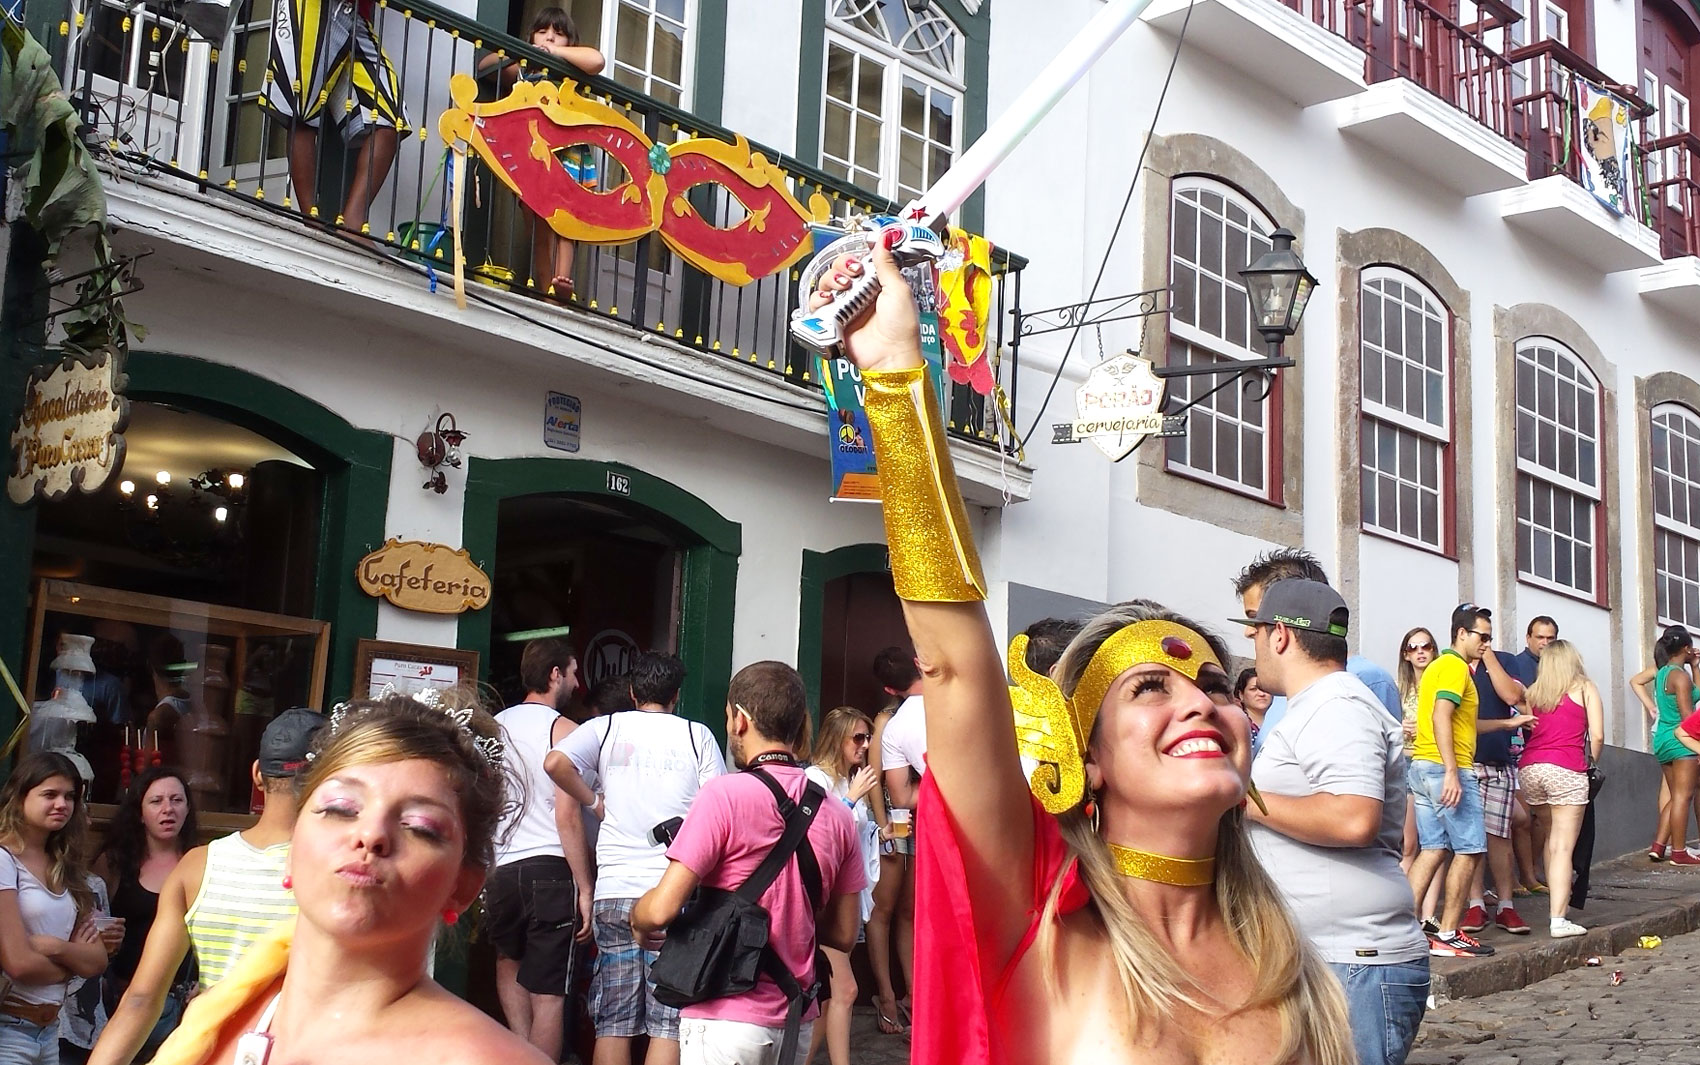 Carnaval 2016: Pacotes para Ouro Preto